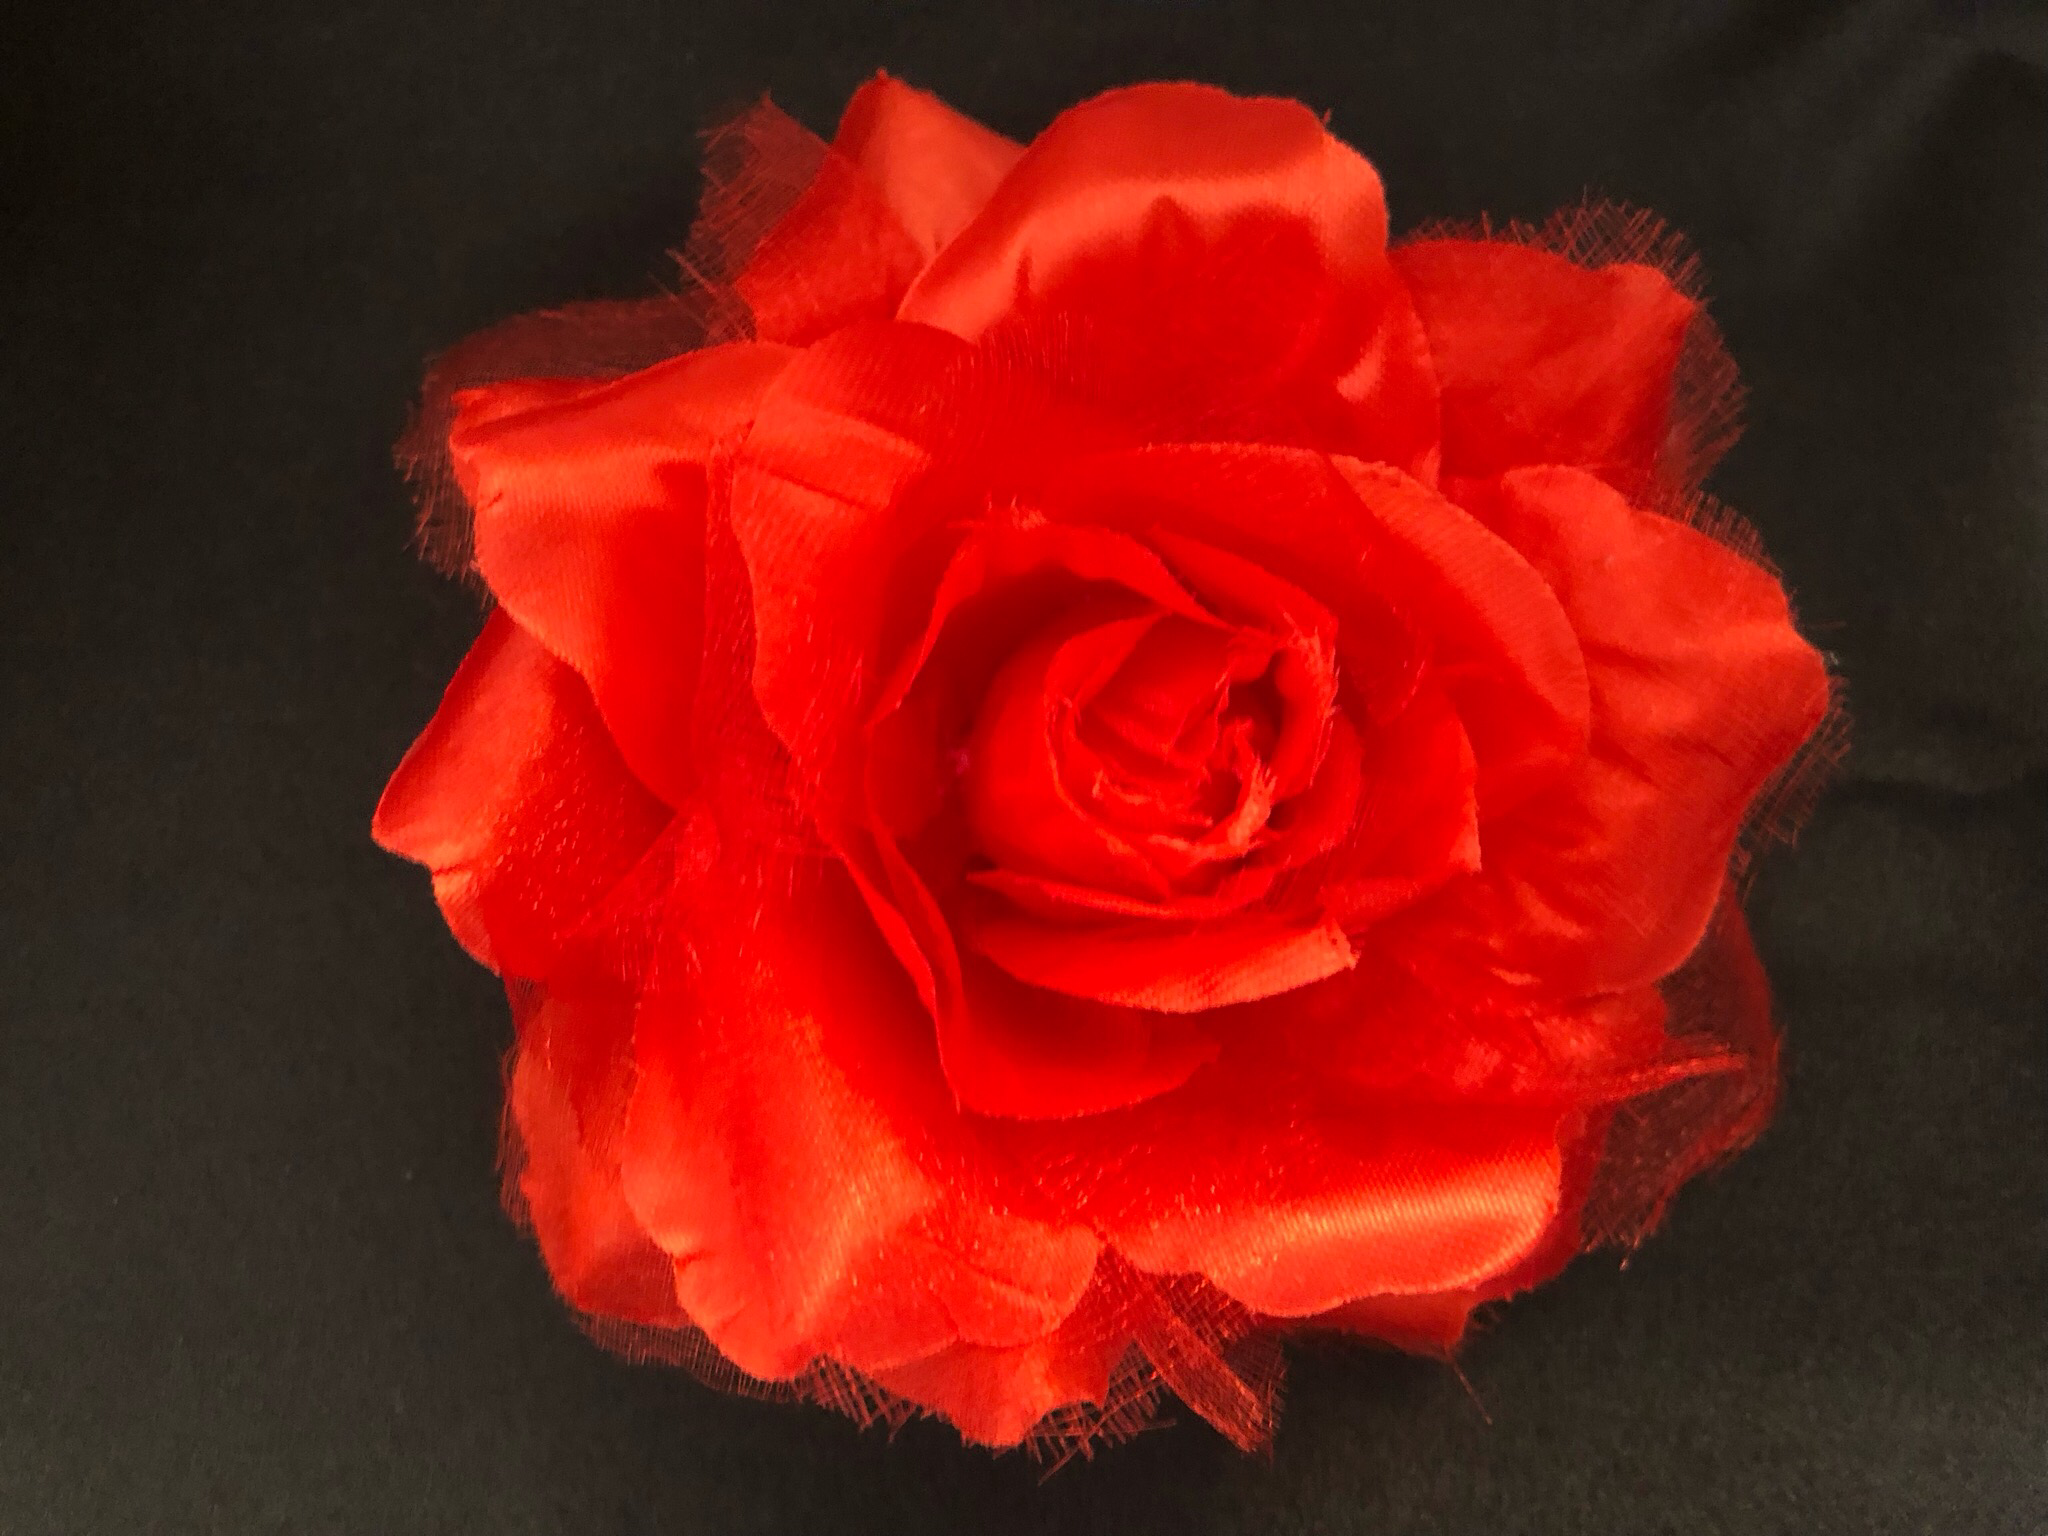 Rose 10 cm